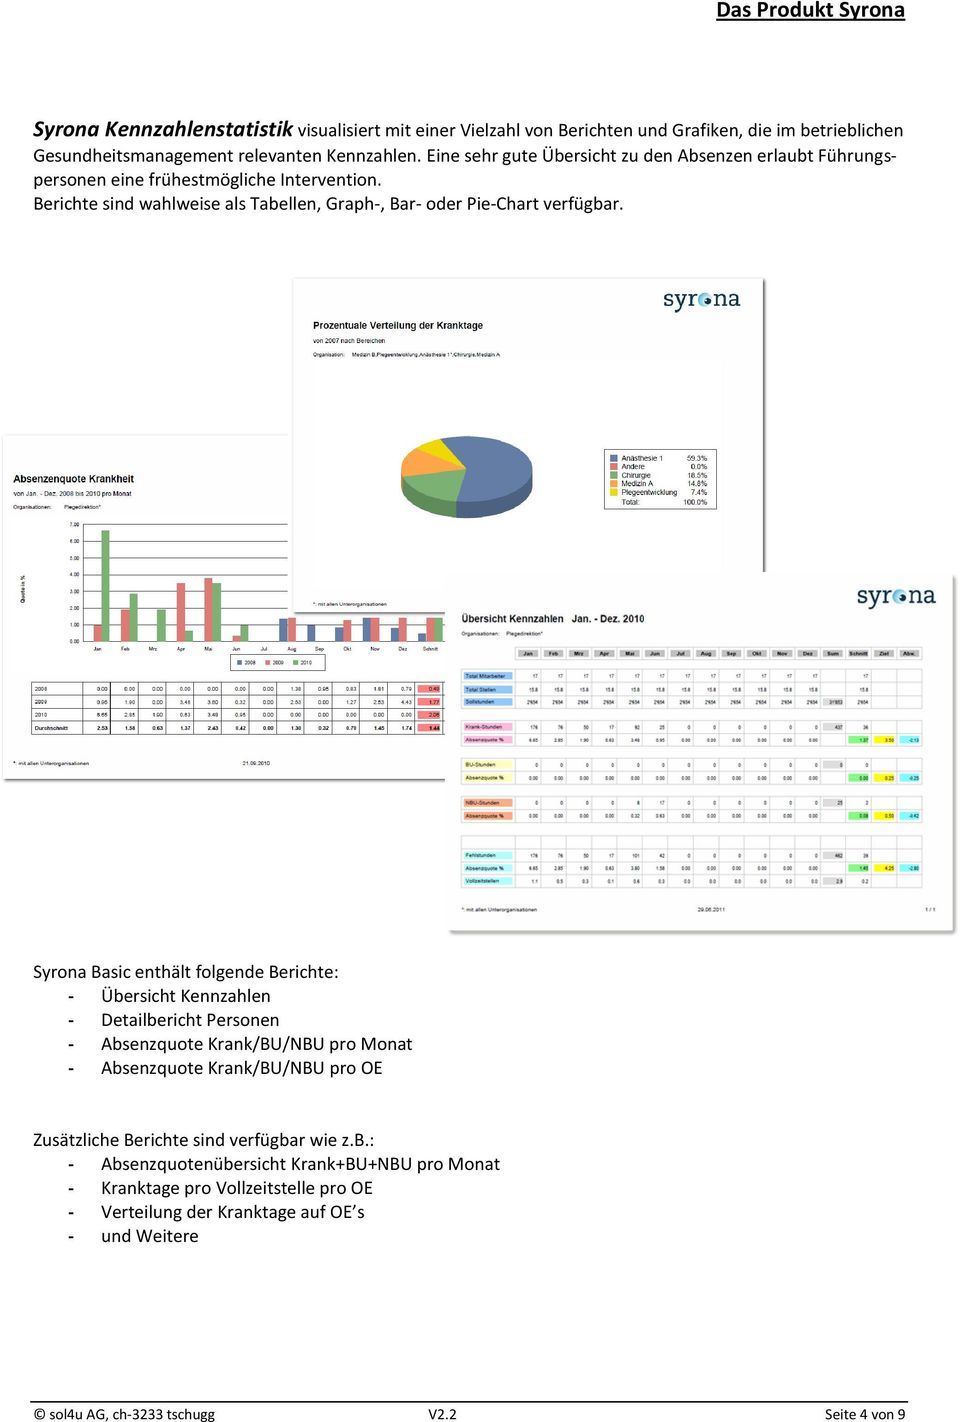 Syrona Basic enthält folgende Berichte: - Übersicht Kennzahlen - Detailbericht Personen - Absenzquote Krank/BU/NBU pro Monat - Absenzquote Krank/BU/NBU pro OE Zusätzliche